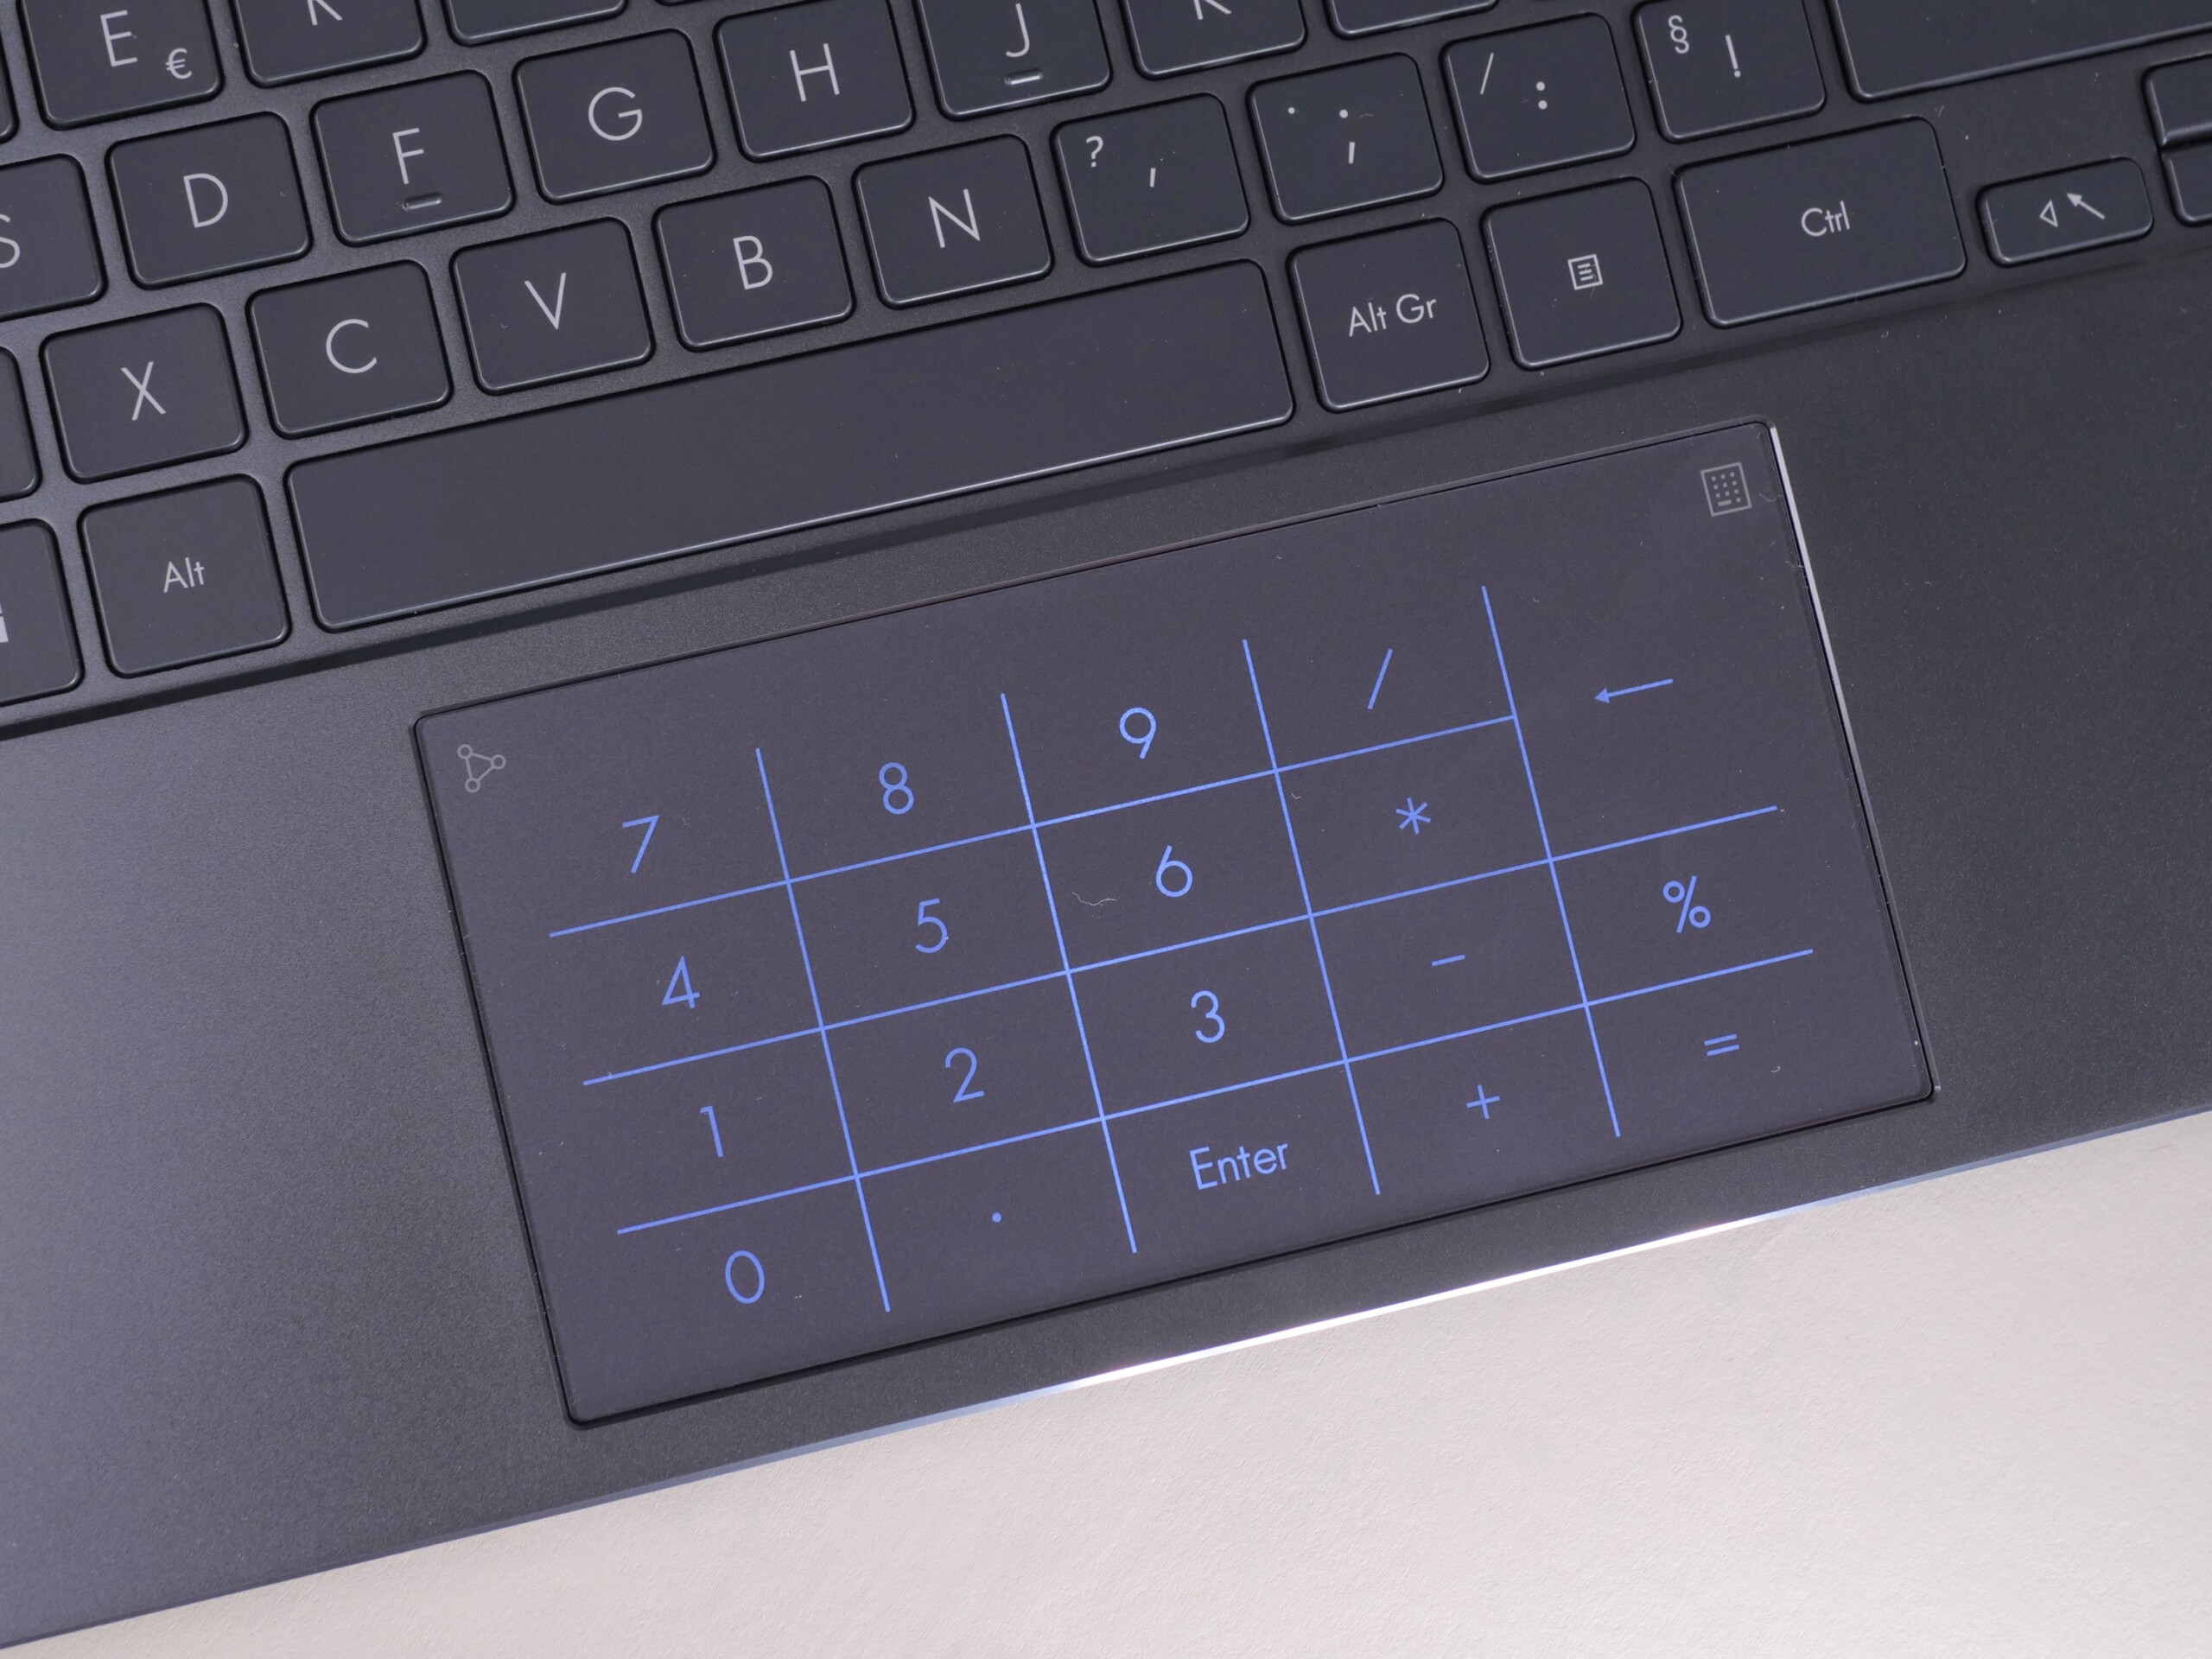 Avec le ZenBook 13 OLED, Asus dégaine le premier PC portable OLED à moins  de 1 000 euros